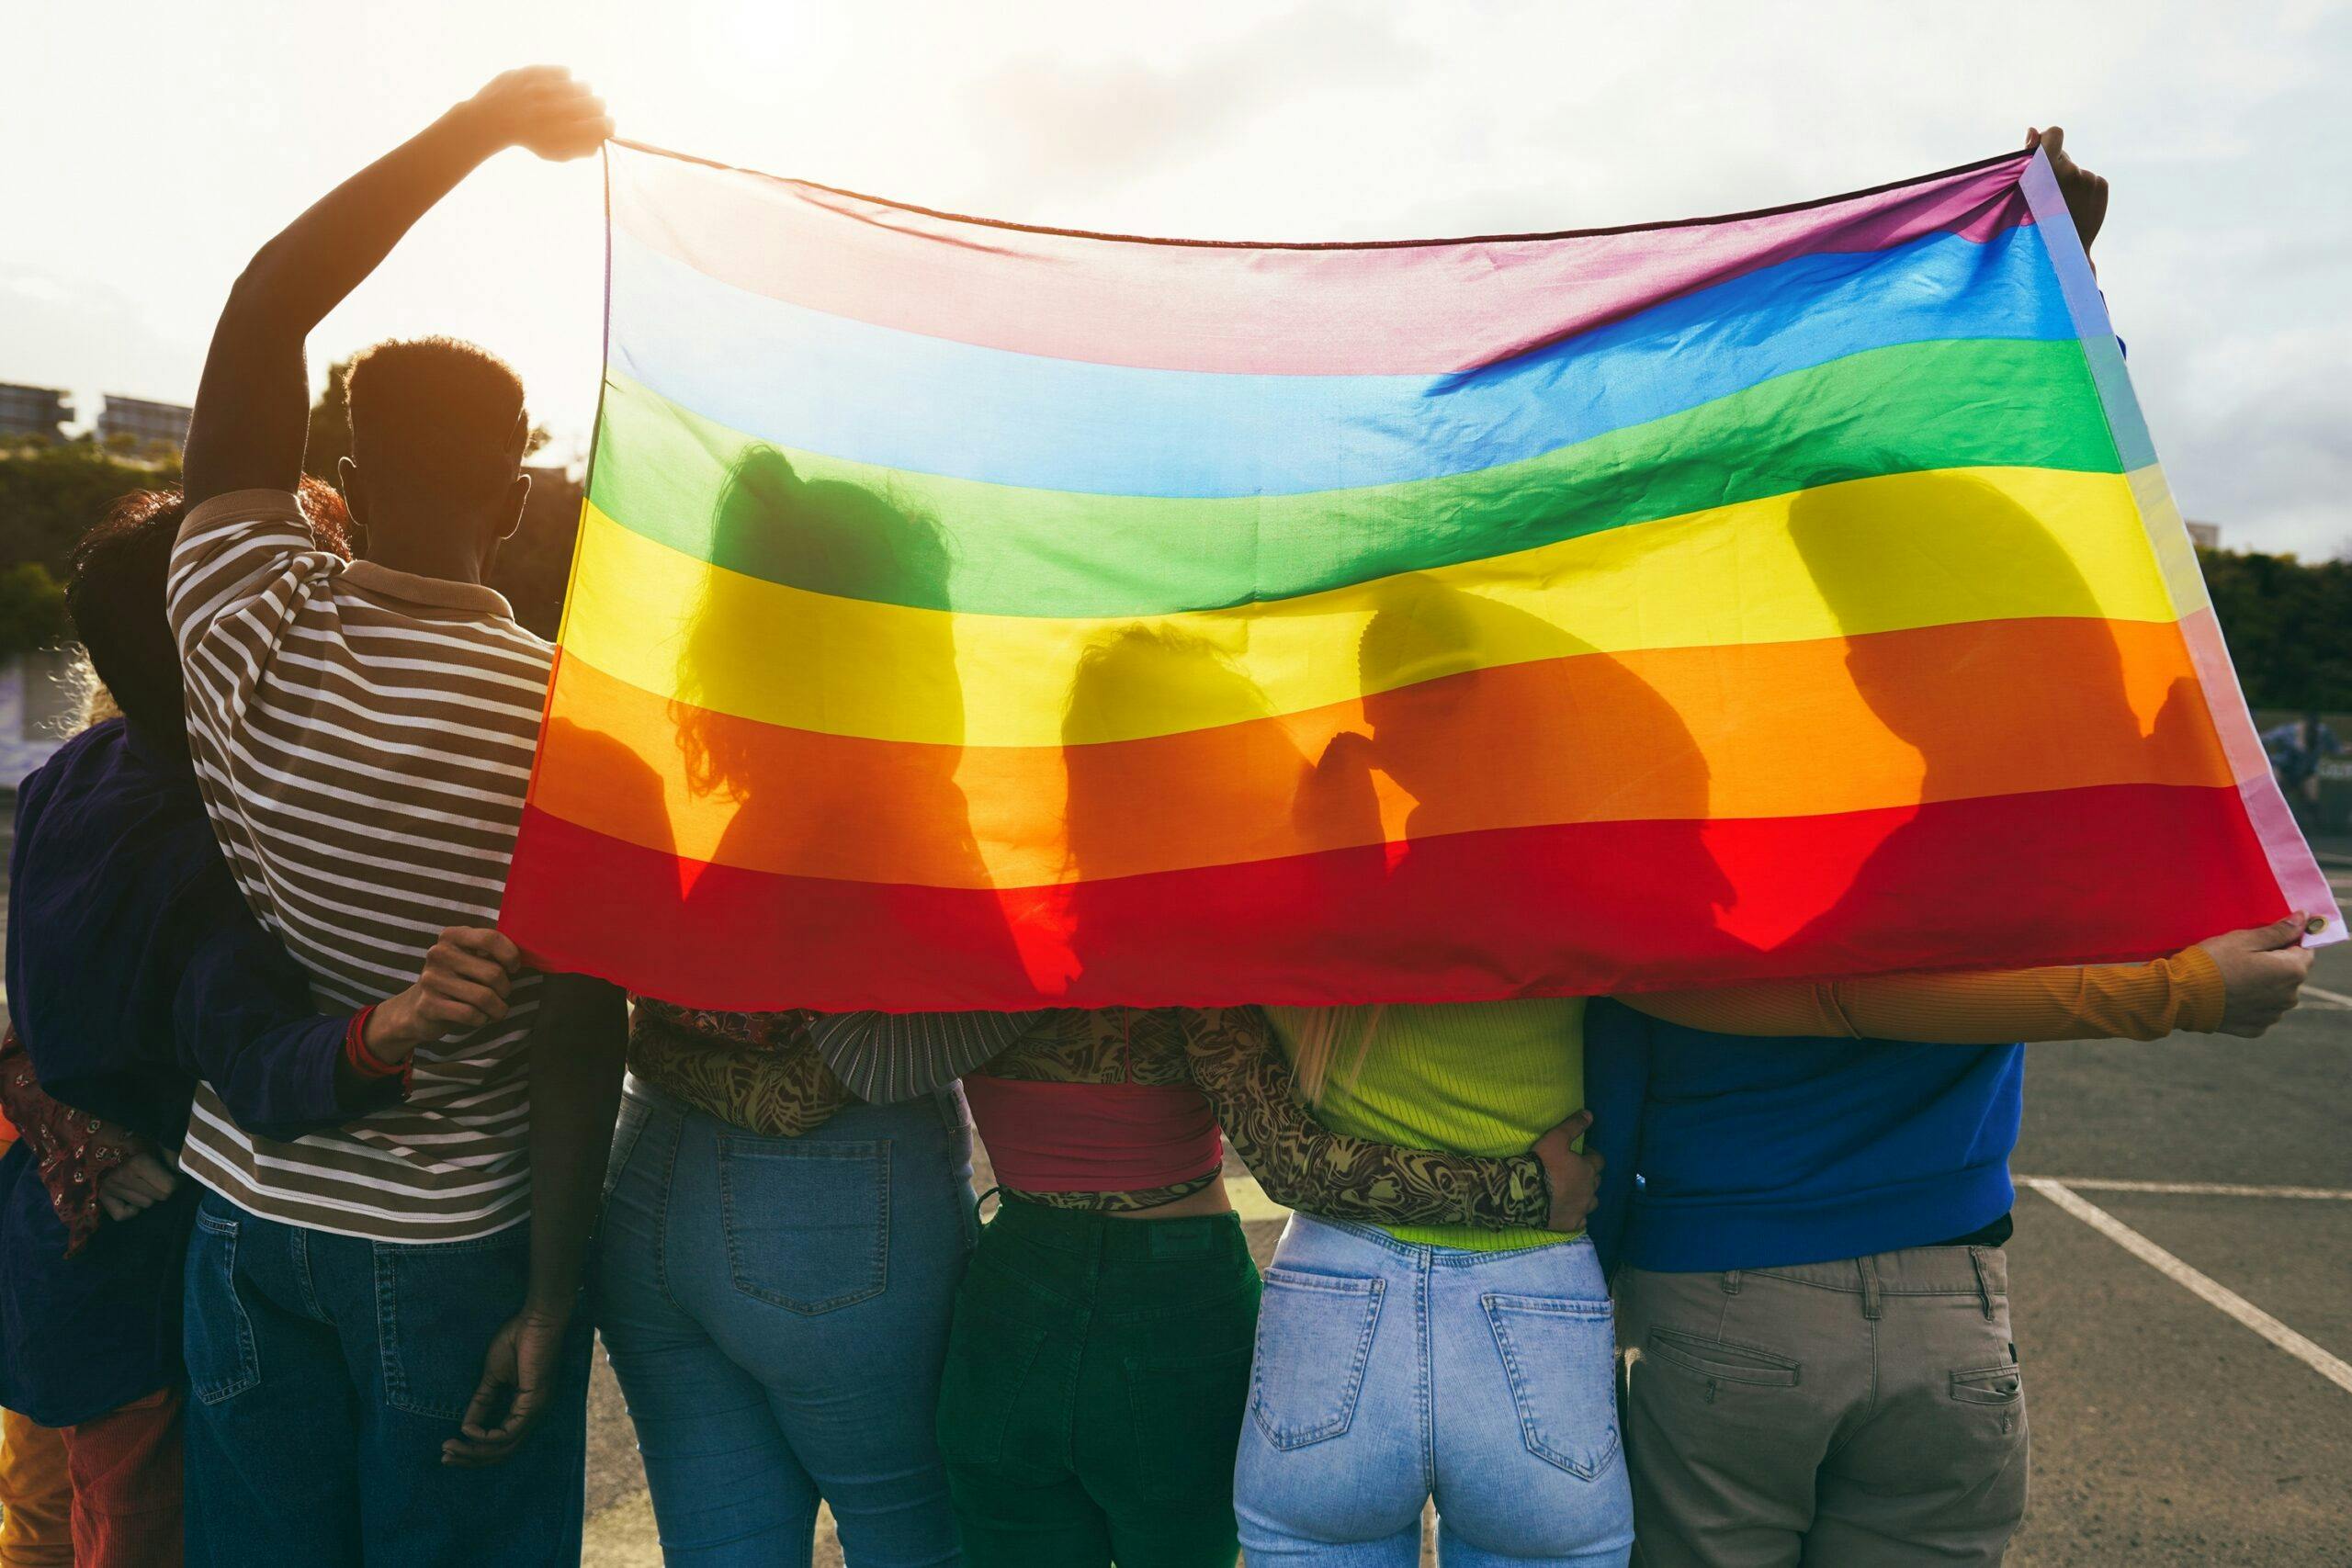 تصویر تزئینی از شاتر استاک پرچم رنگین‌کمان را پشت سر چند نفر نشان می‌دهد. افراد کوئیر در غنا نمی‌توانند تصویری از خود منتشر کنند چون با مجازات‌های حکومتی روبرو می‌شوند.